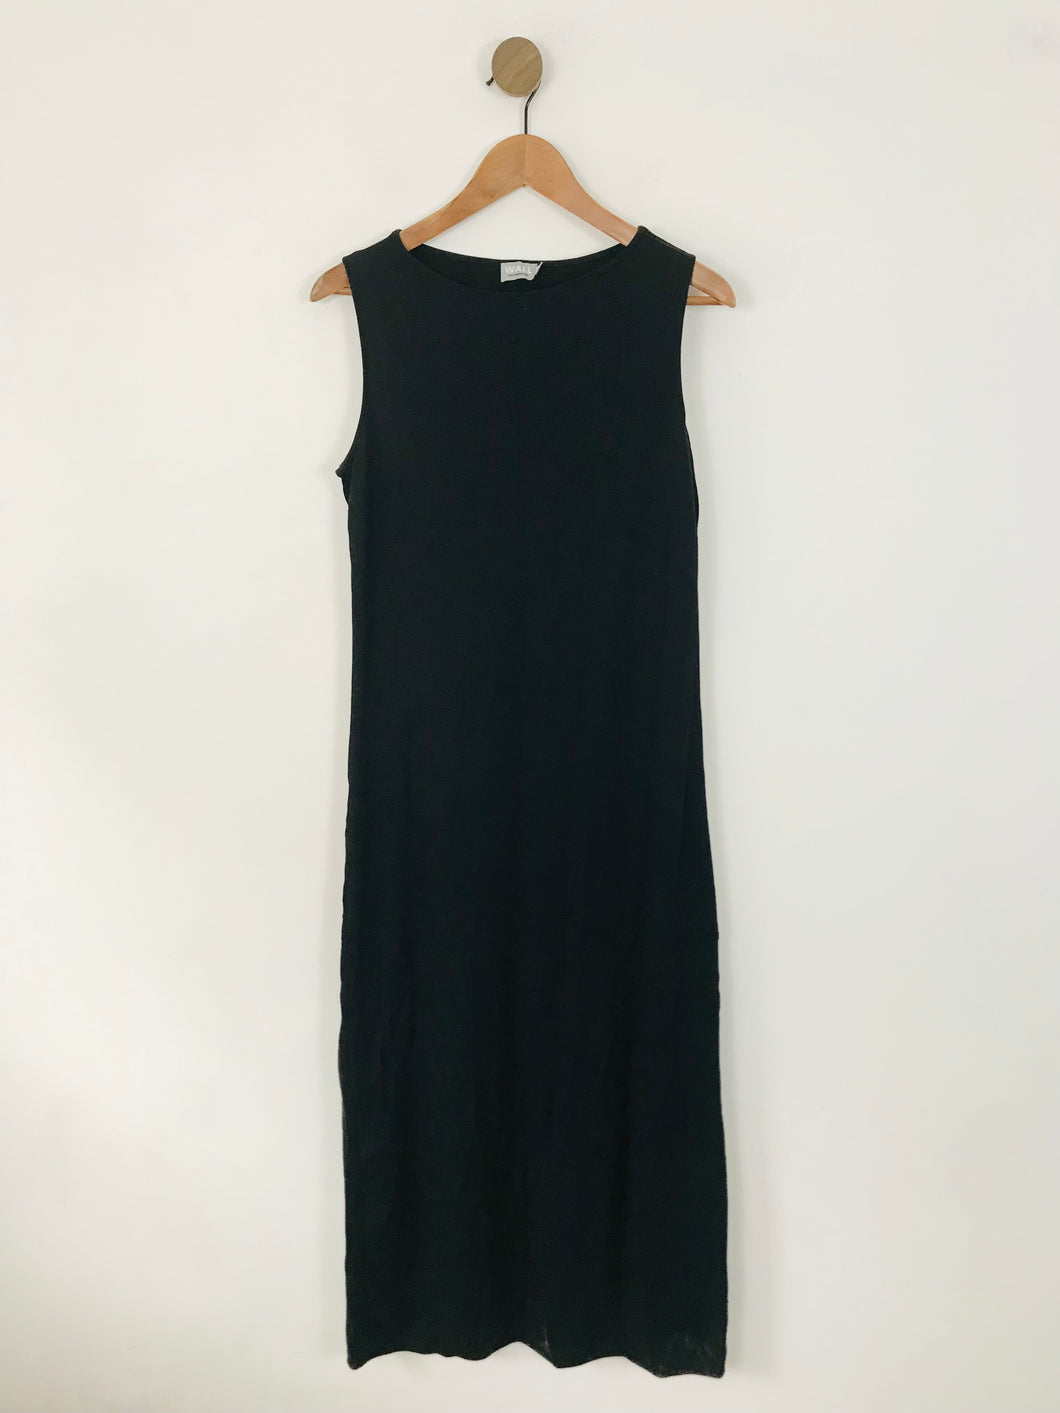 Wall London Women's Cotton Sleeveless Maxi Dress | M UK10-12 | Black